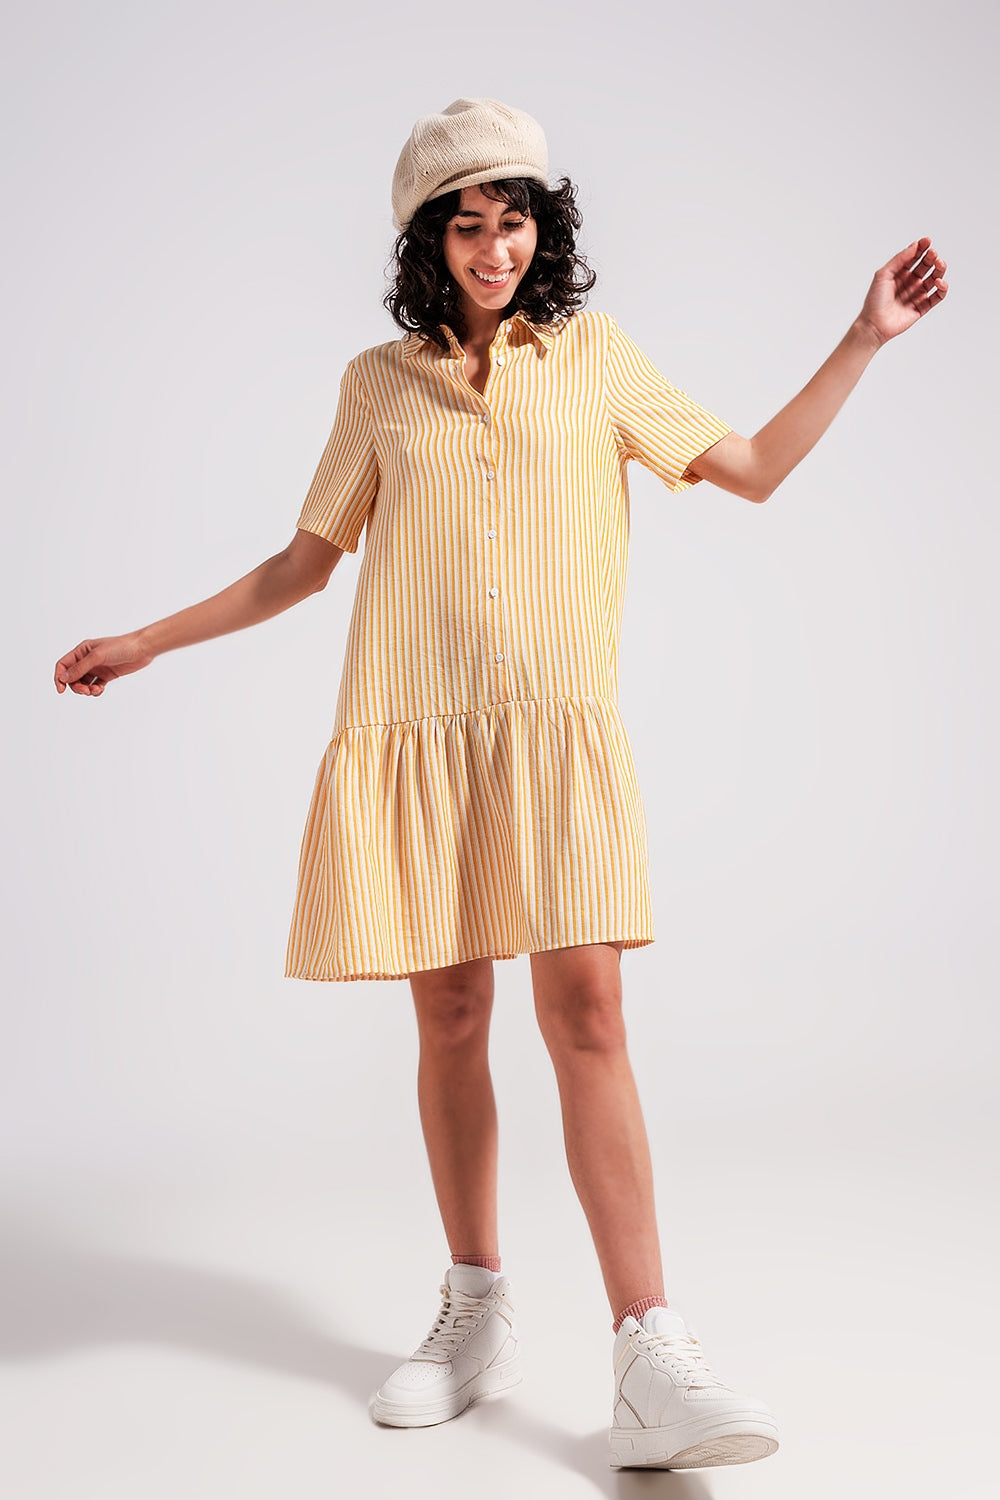 Stripe Print Mini Dress in Yellow